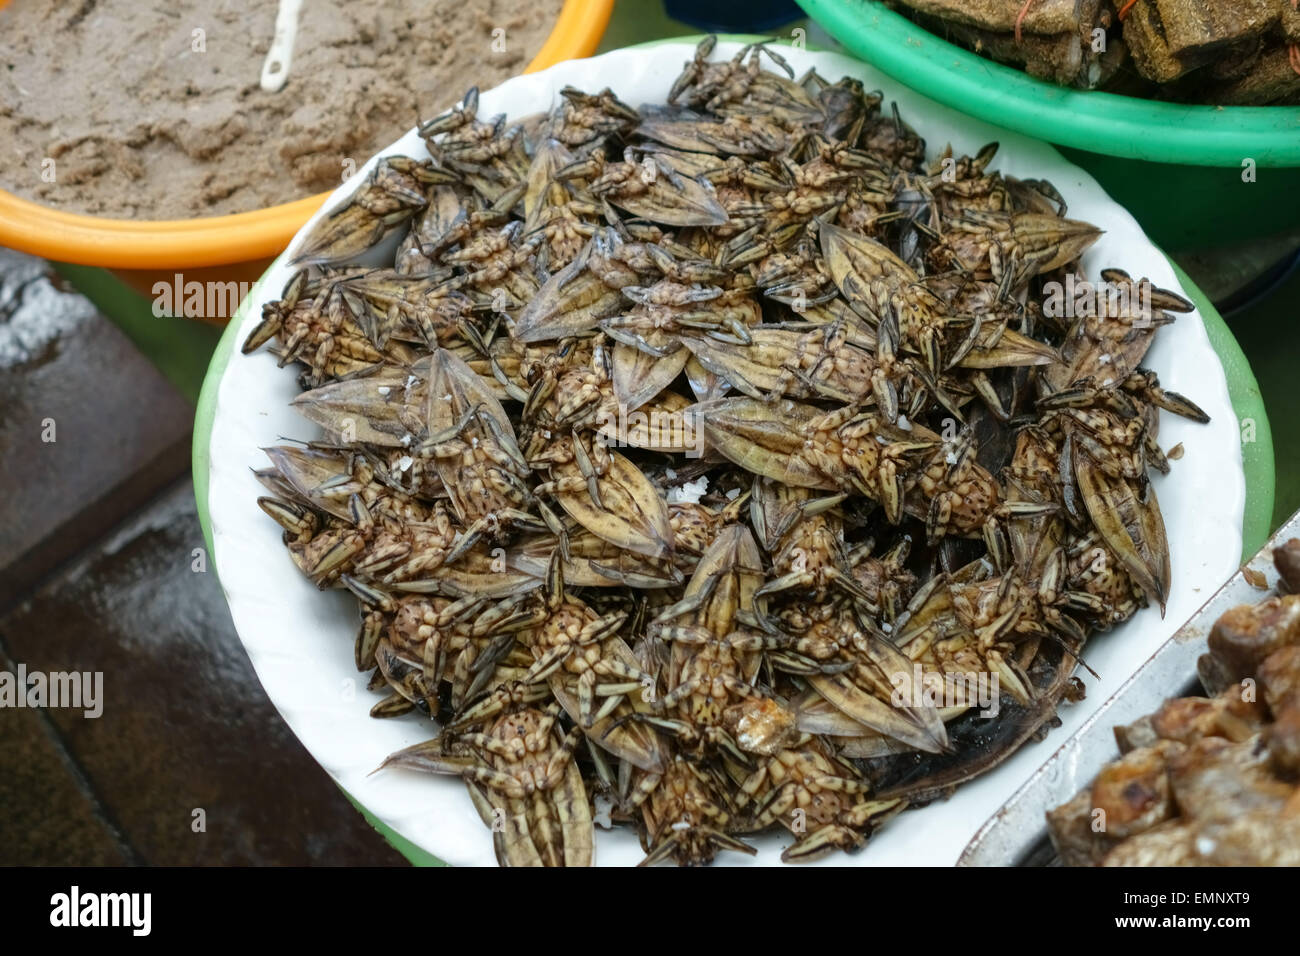 Gigantescos insectos acuáticos buceo o escarabajos, Lethocerus indicus, en un puesto de comida en un mercado en Bangkok, Tailandia Foto de stock